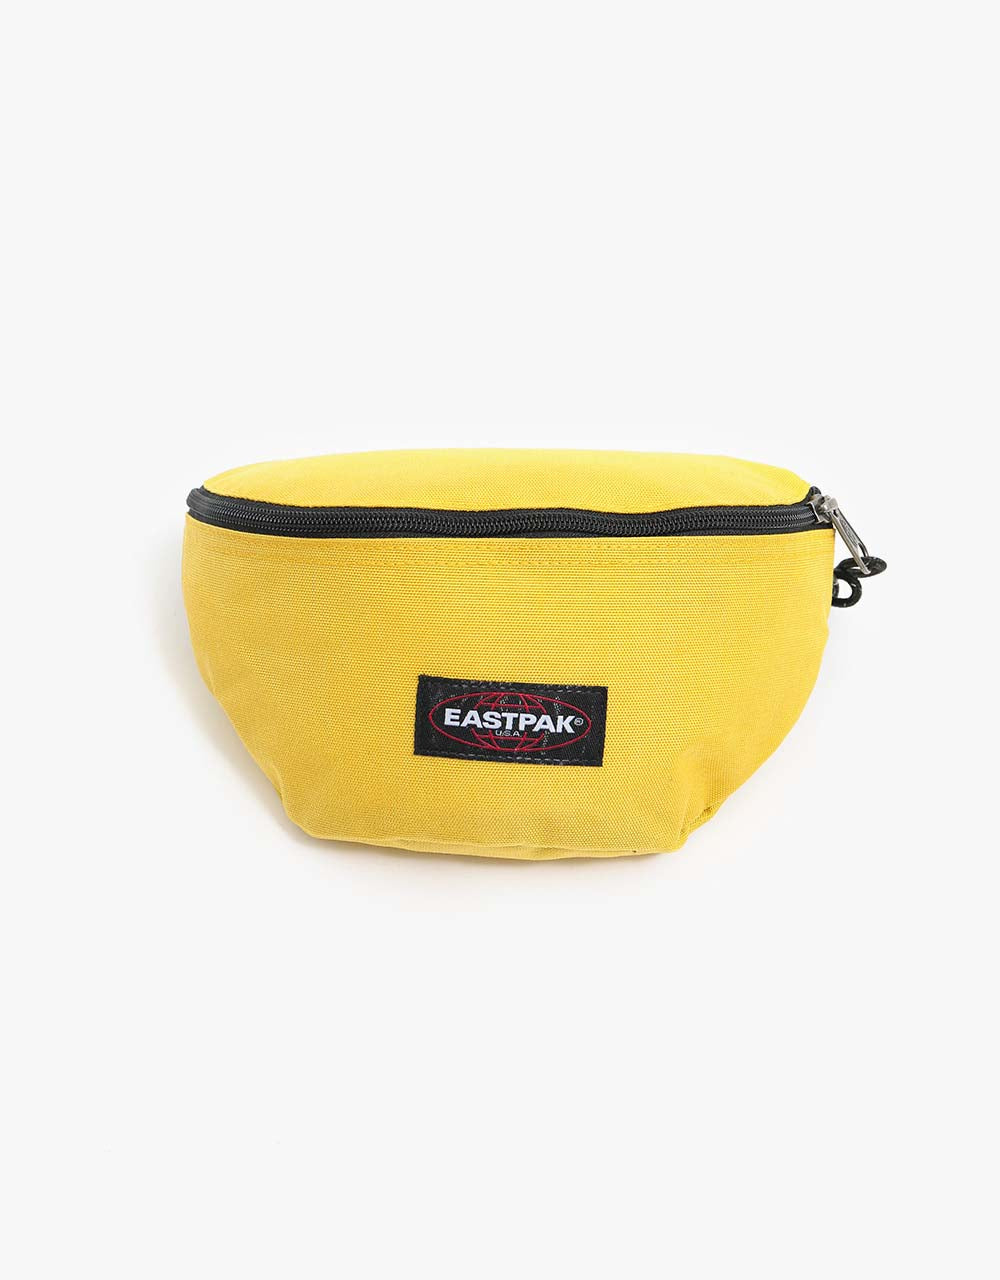 Eastpak Springer Cross Body Bag - Sunny Yellow